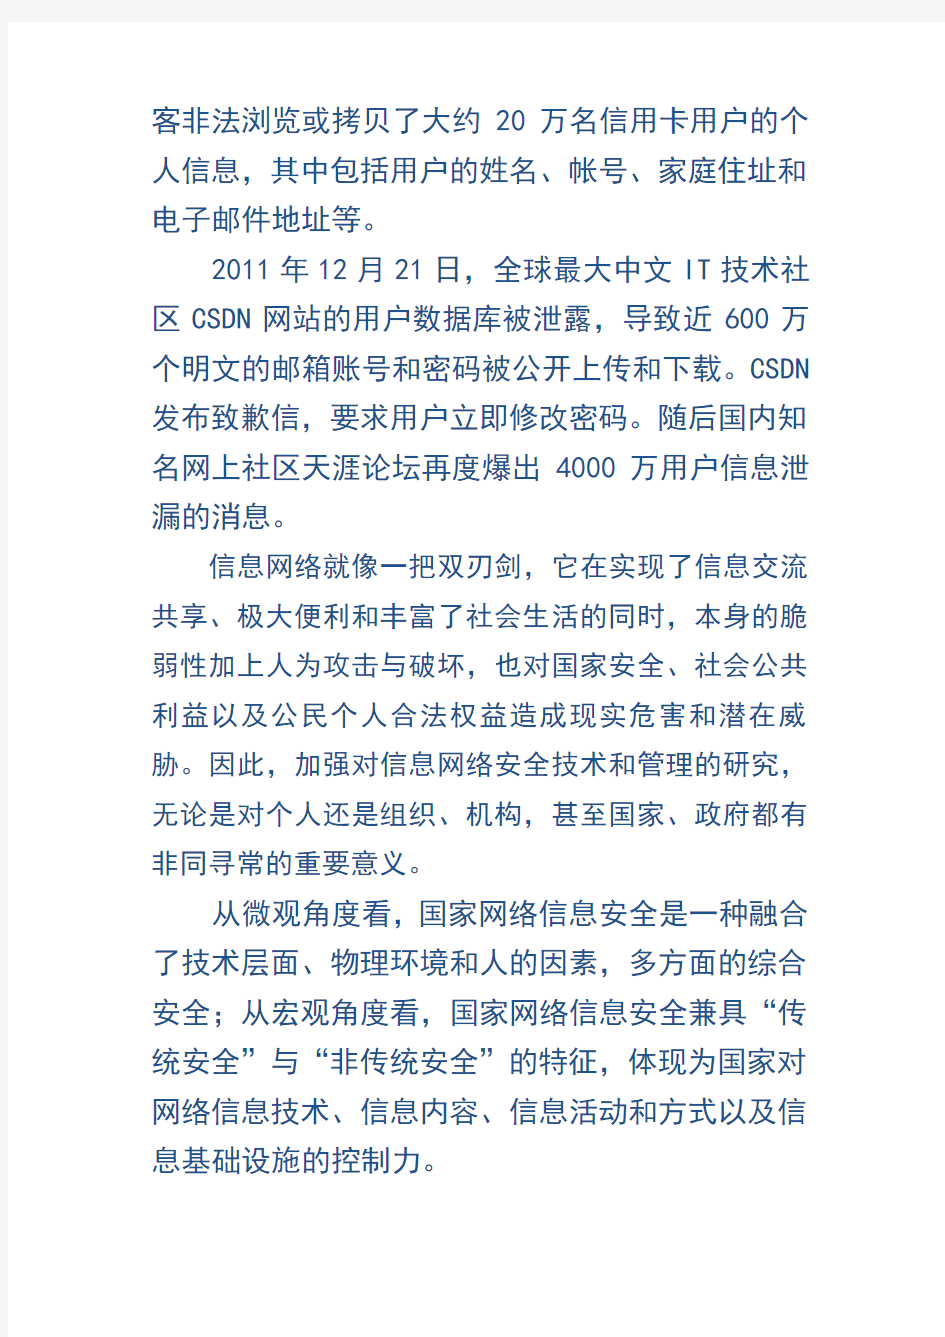 01 郑州市 2015 网络安全员培训考试资料 管理 第一章